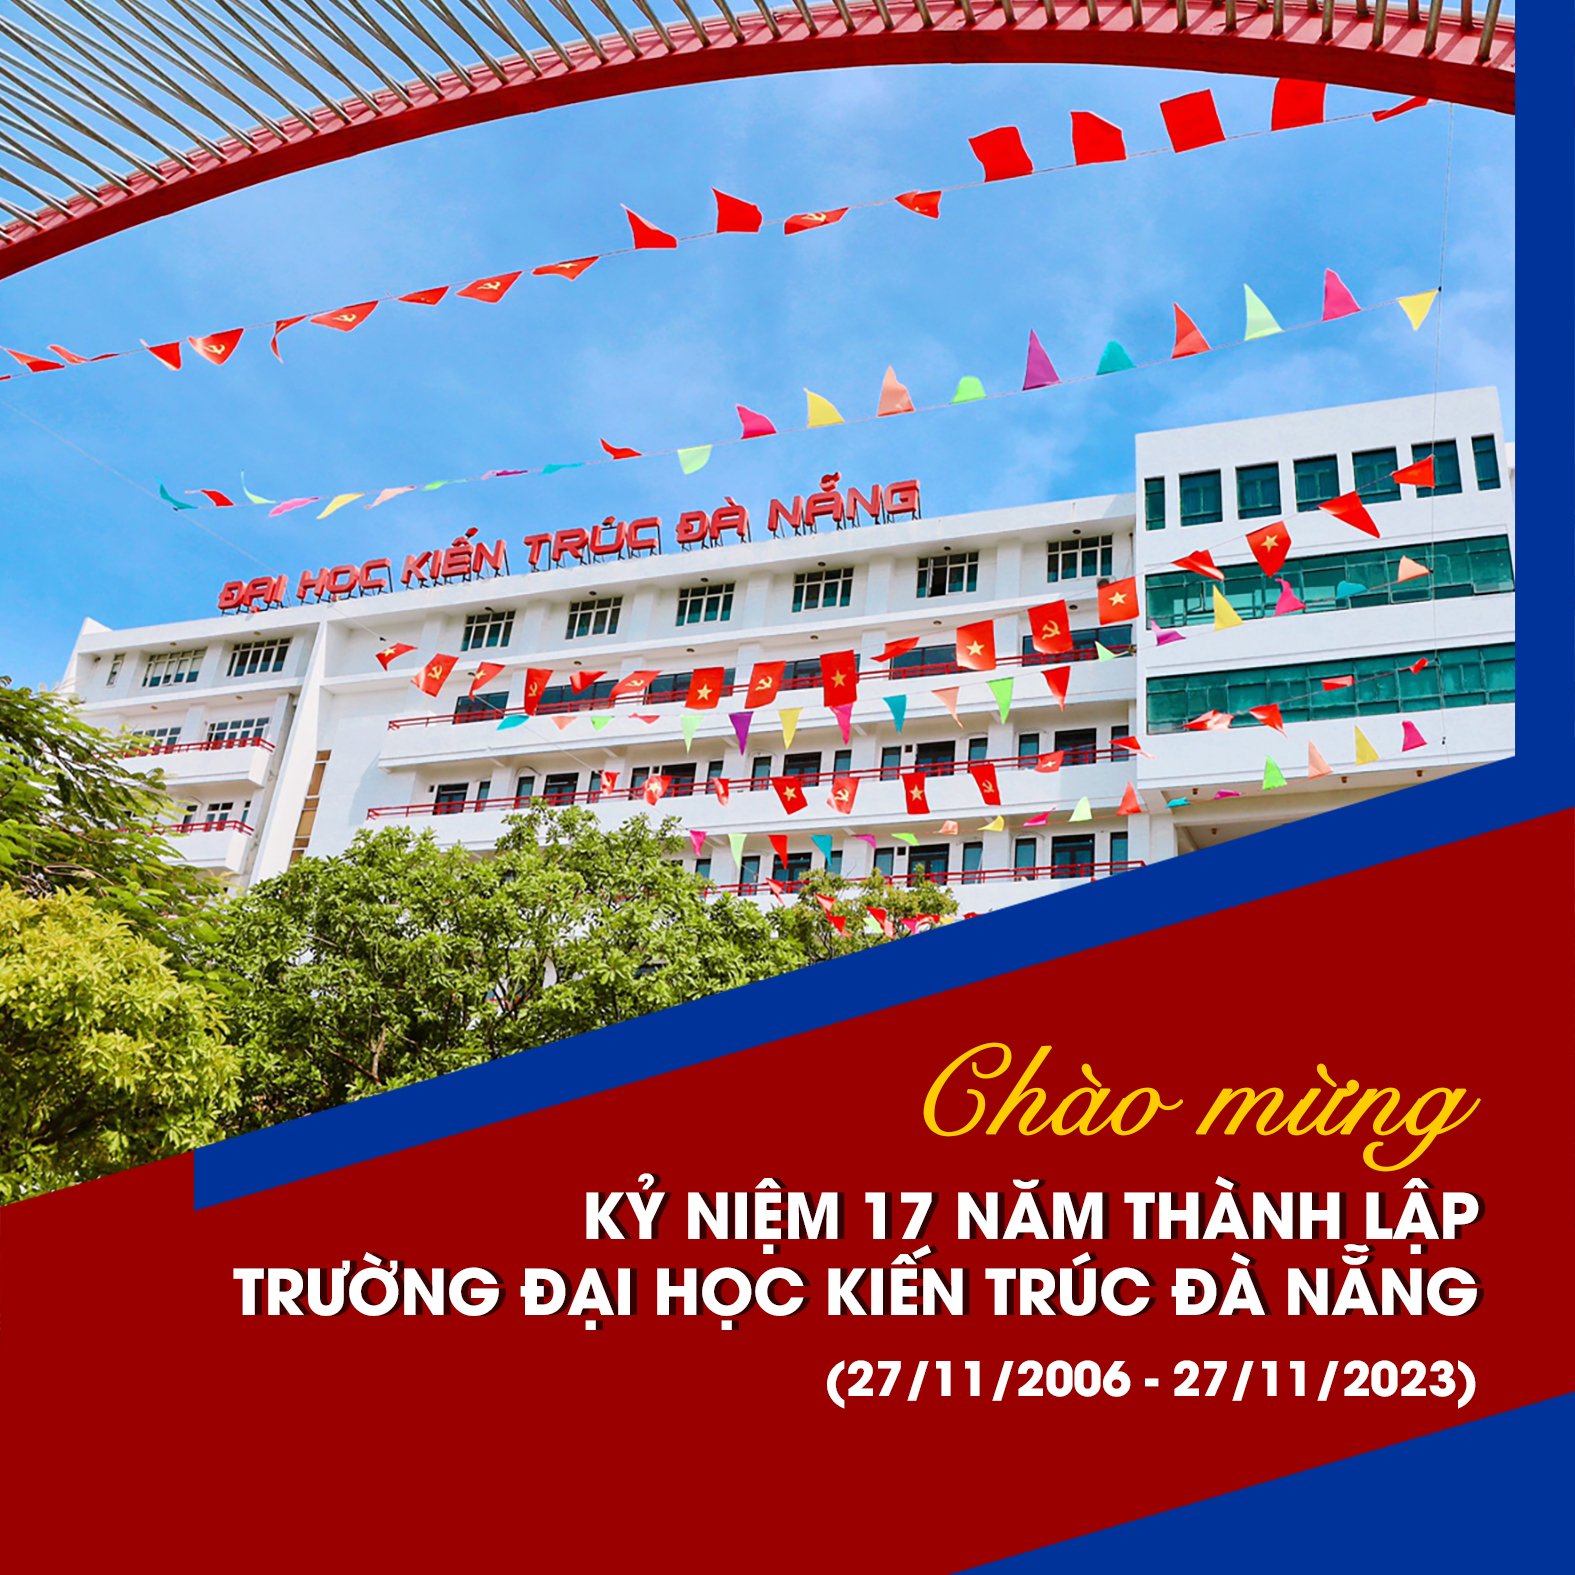 Kỷ niệm 17 năm thành lập Trường Đại học Kiến trúc Đà Nẵng